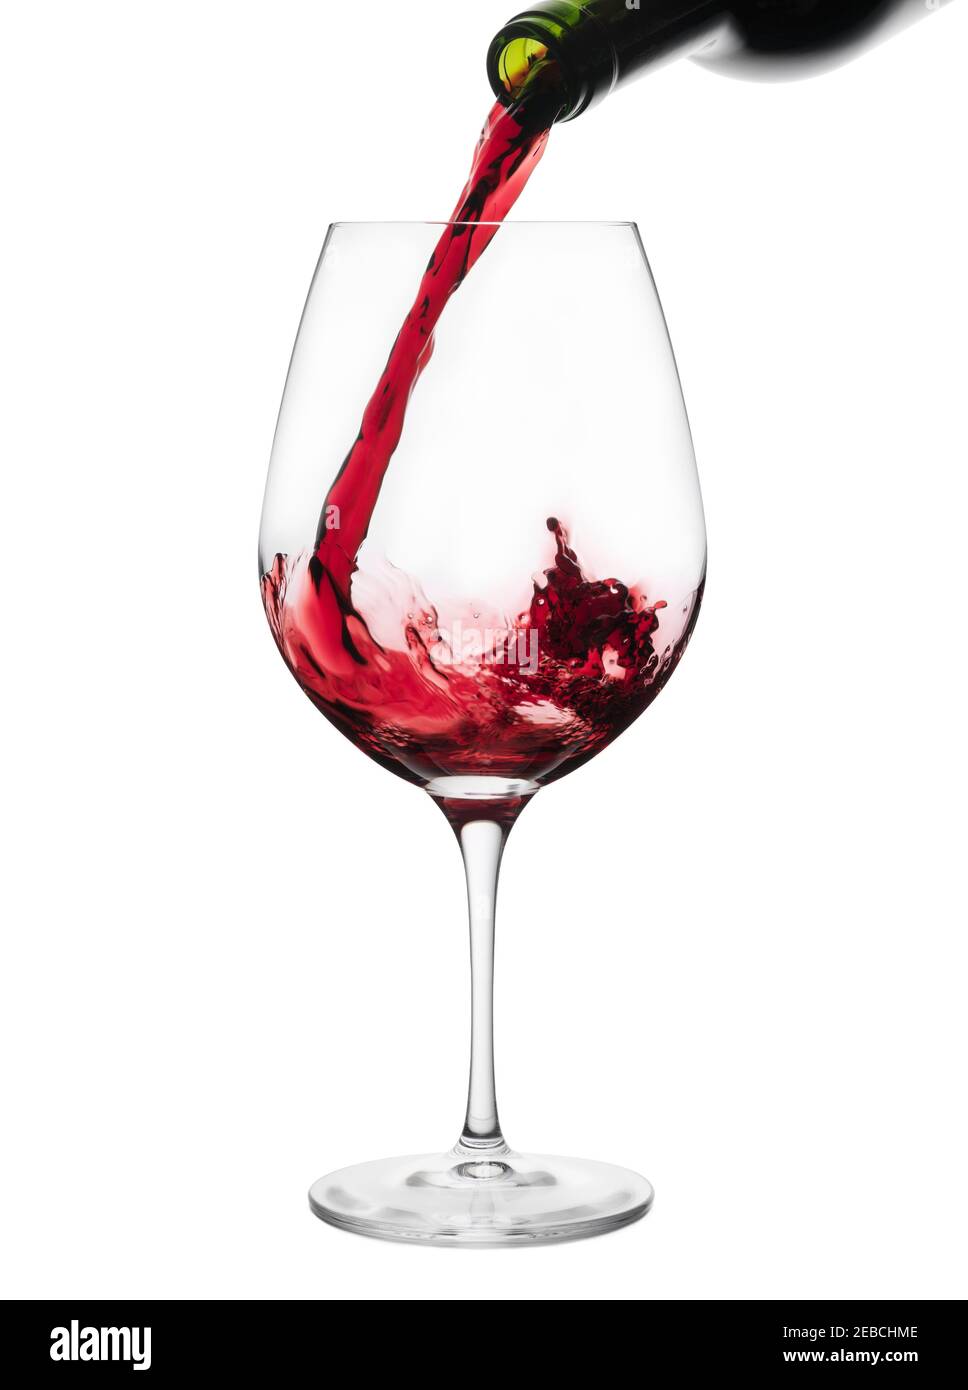 vin rouge qui coule d'une bouteille dans un verre Banque D'Images